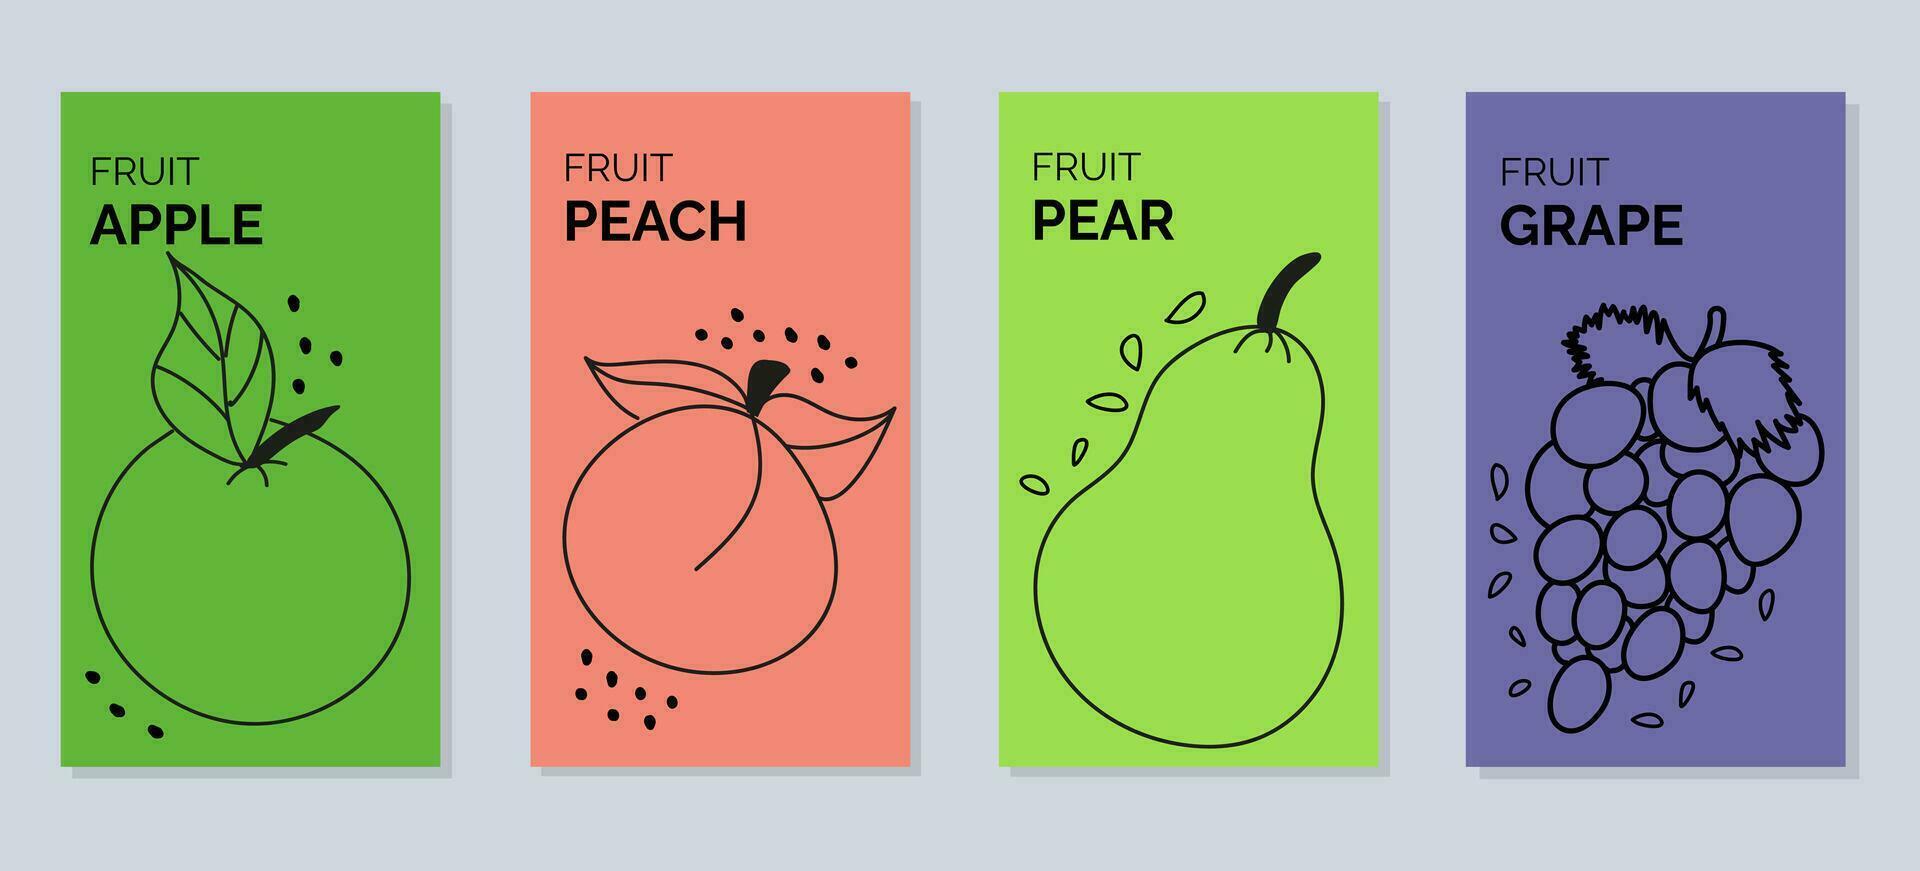 cuatro pancartas con contorno ilustraciones de frutas - pera, durazno, manzana, uvas vector